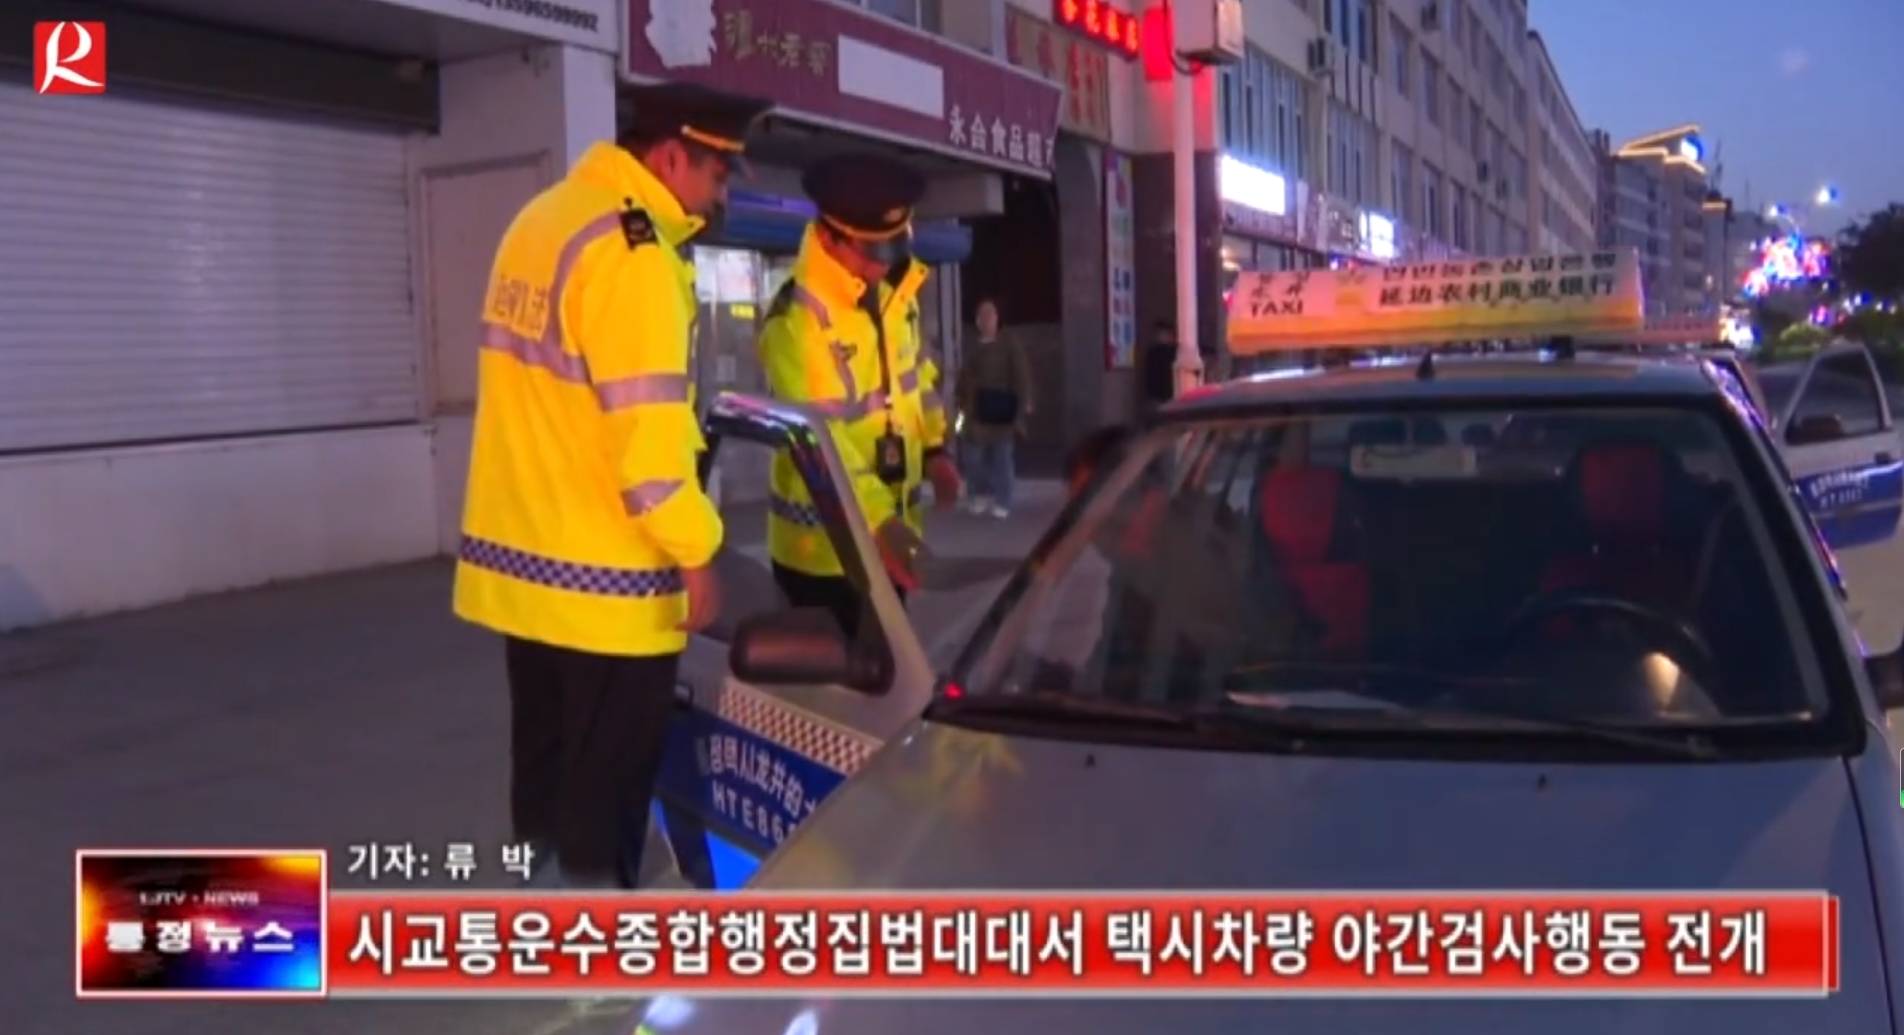 【룡정뉴스】시교통운수종합행정집법대대서 택시차량 야간검사행동 전개